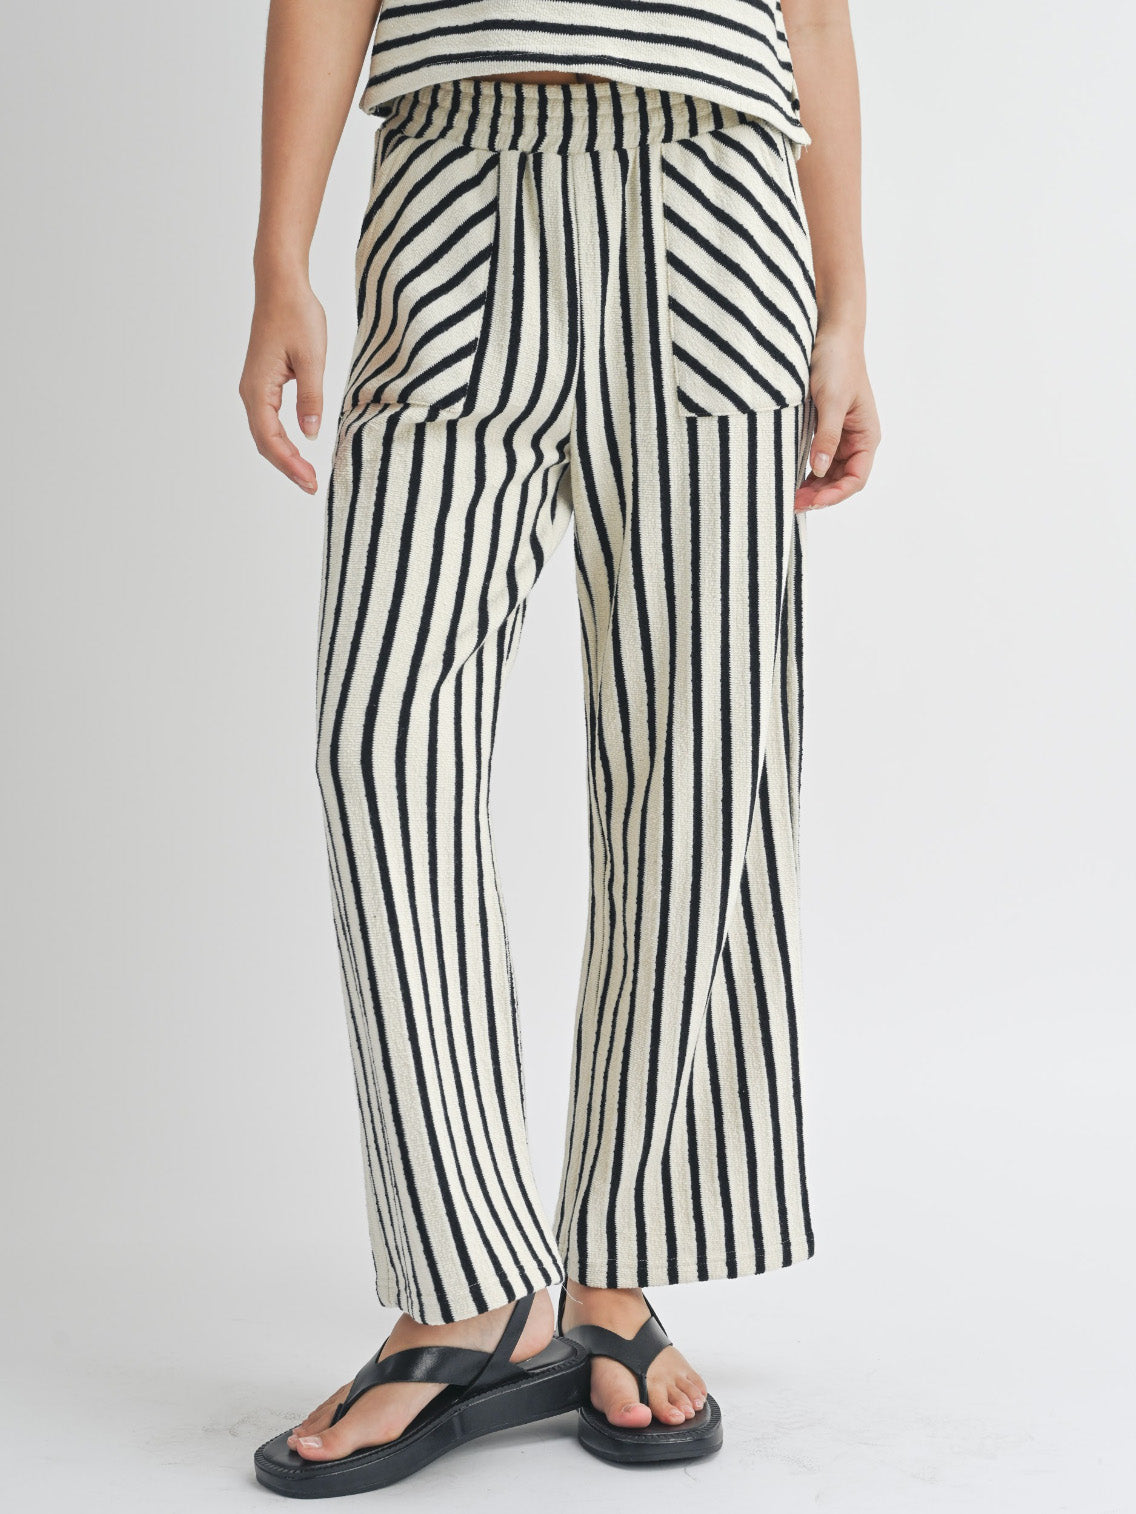 ebony stripes terrycloth pants